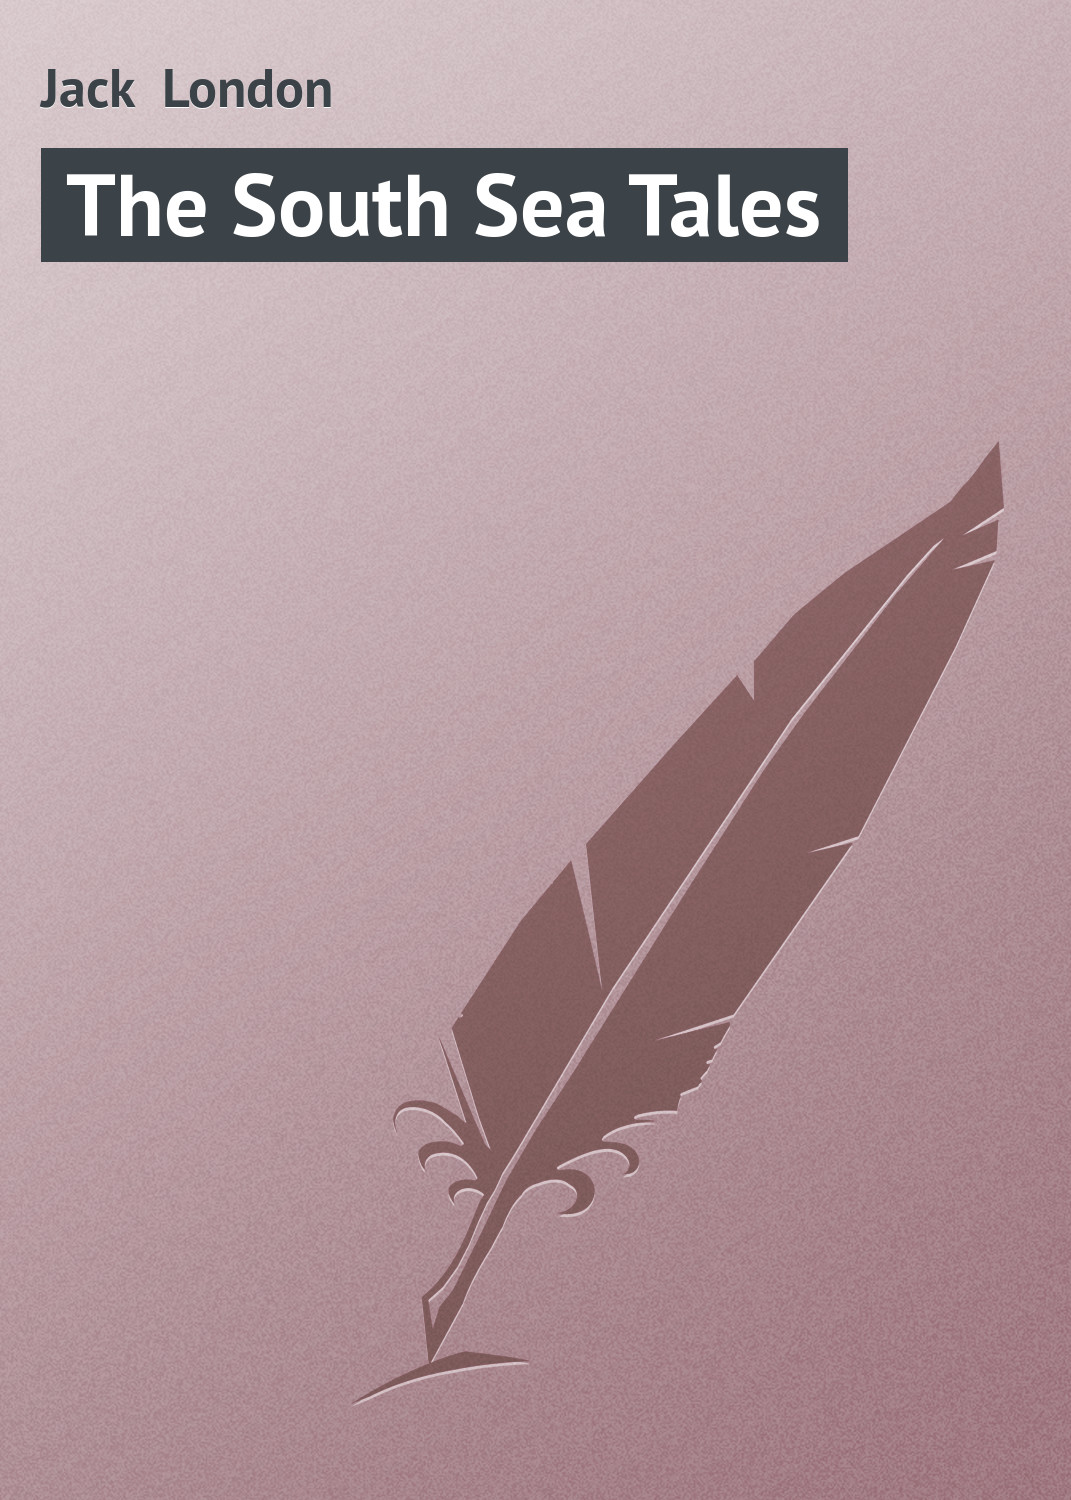 Книга The South Sea Tales из серии , созданная Jack London, может относится к жанру Зарубежная образовательная литература, Зарубежная классика. Стоимость электронной книги The South Sea Tales с идентификатором 21103182 составляет 5.99 руб.